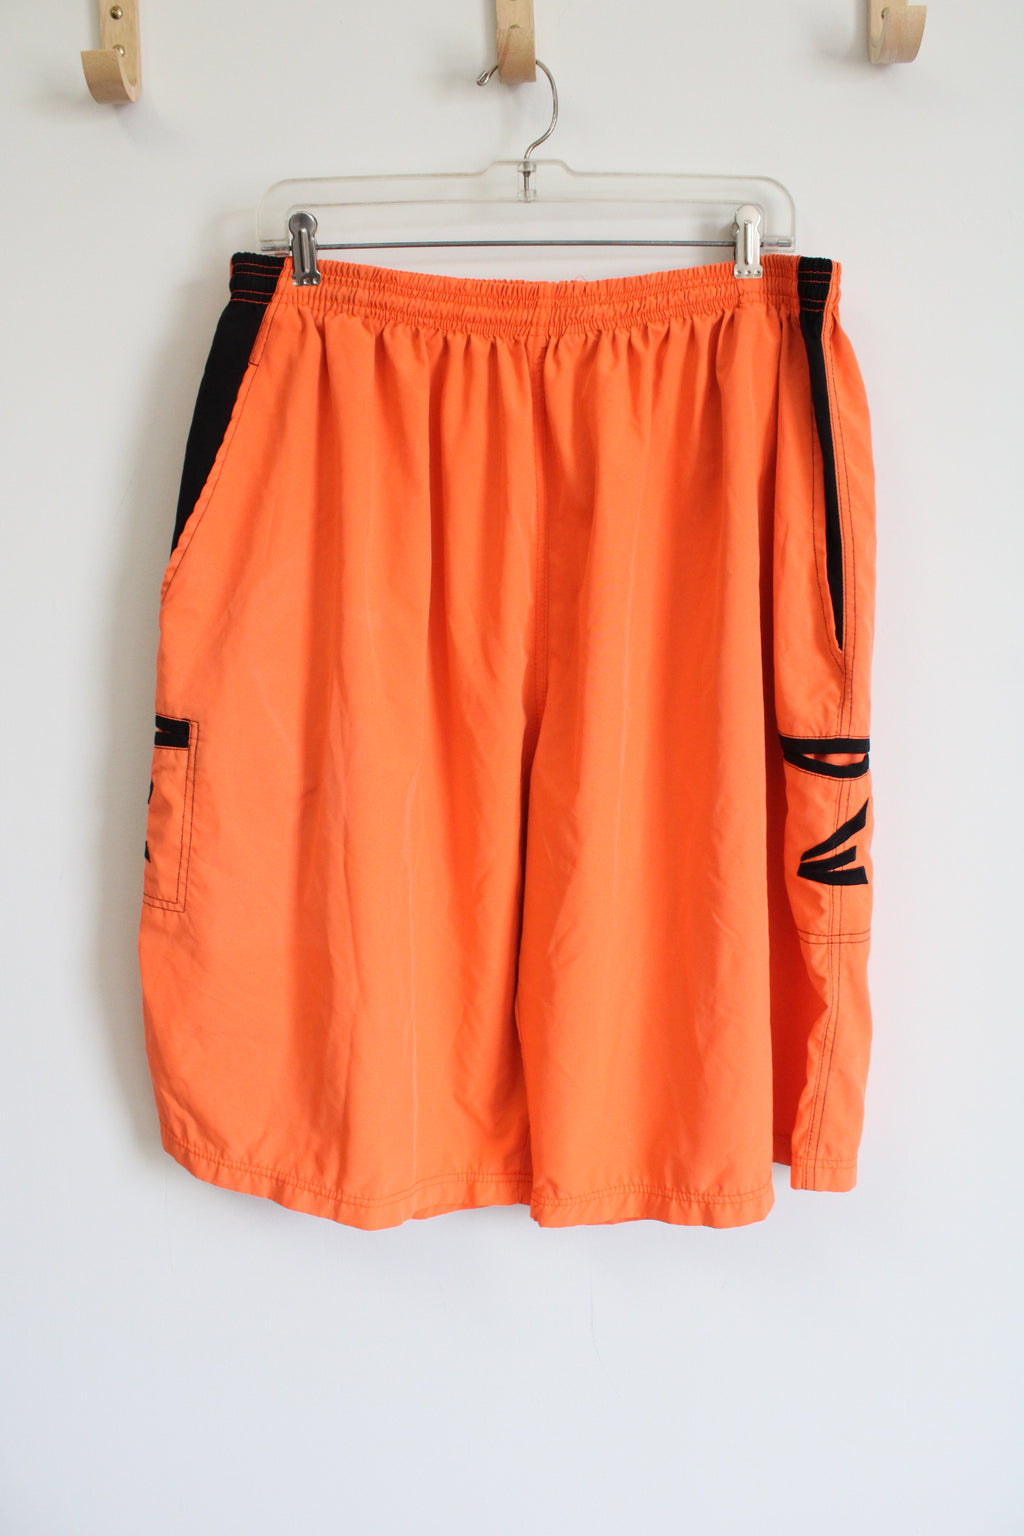 Smash Hit Sports Easton Orange Athletic Shorts | 3XL